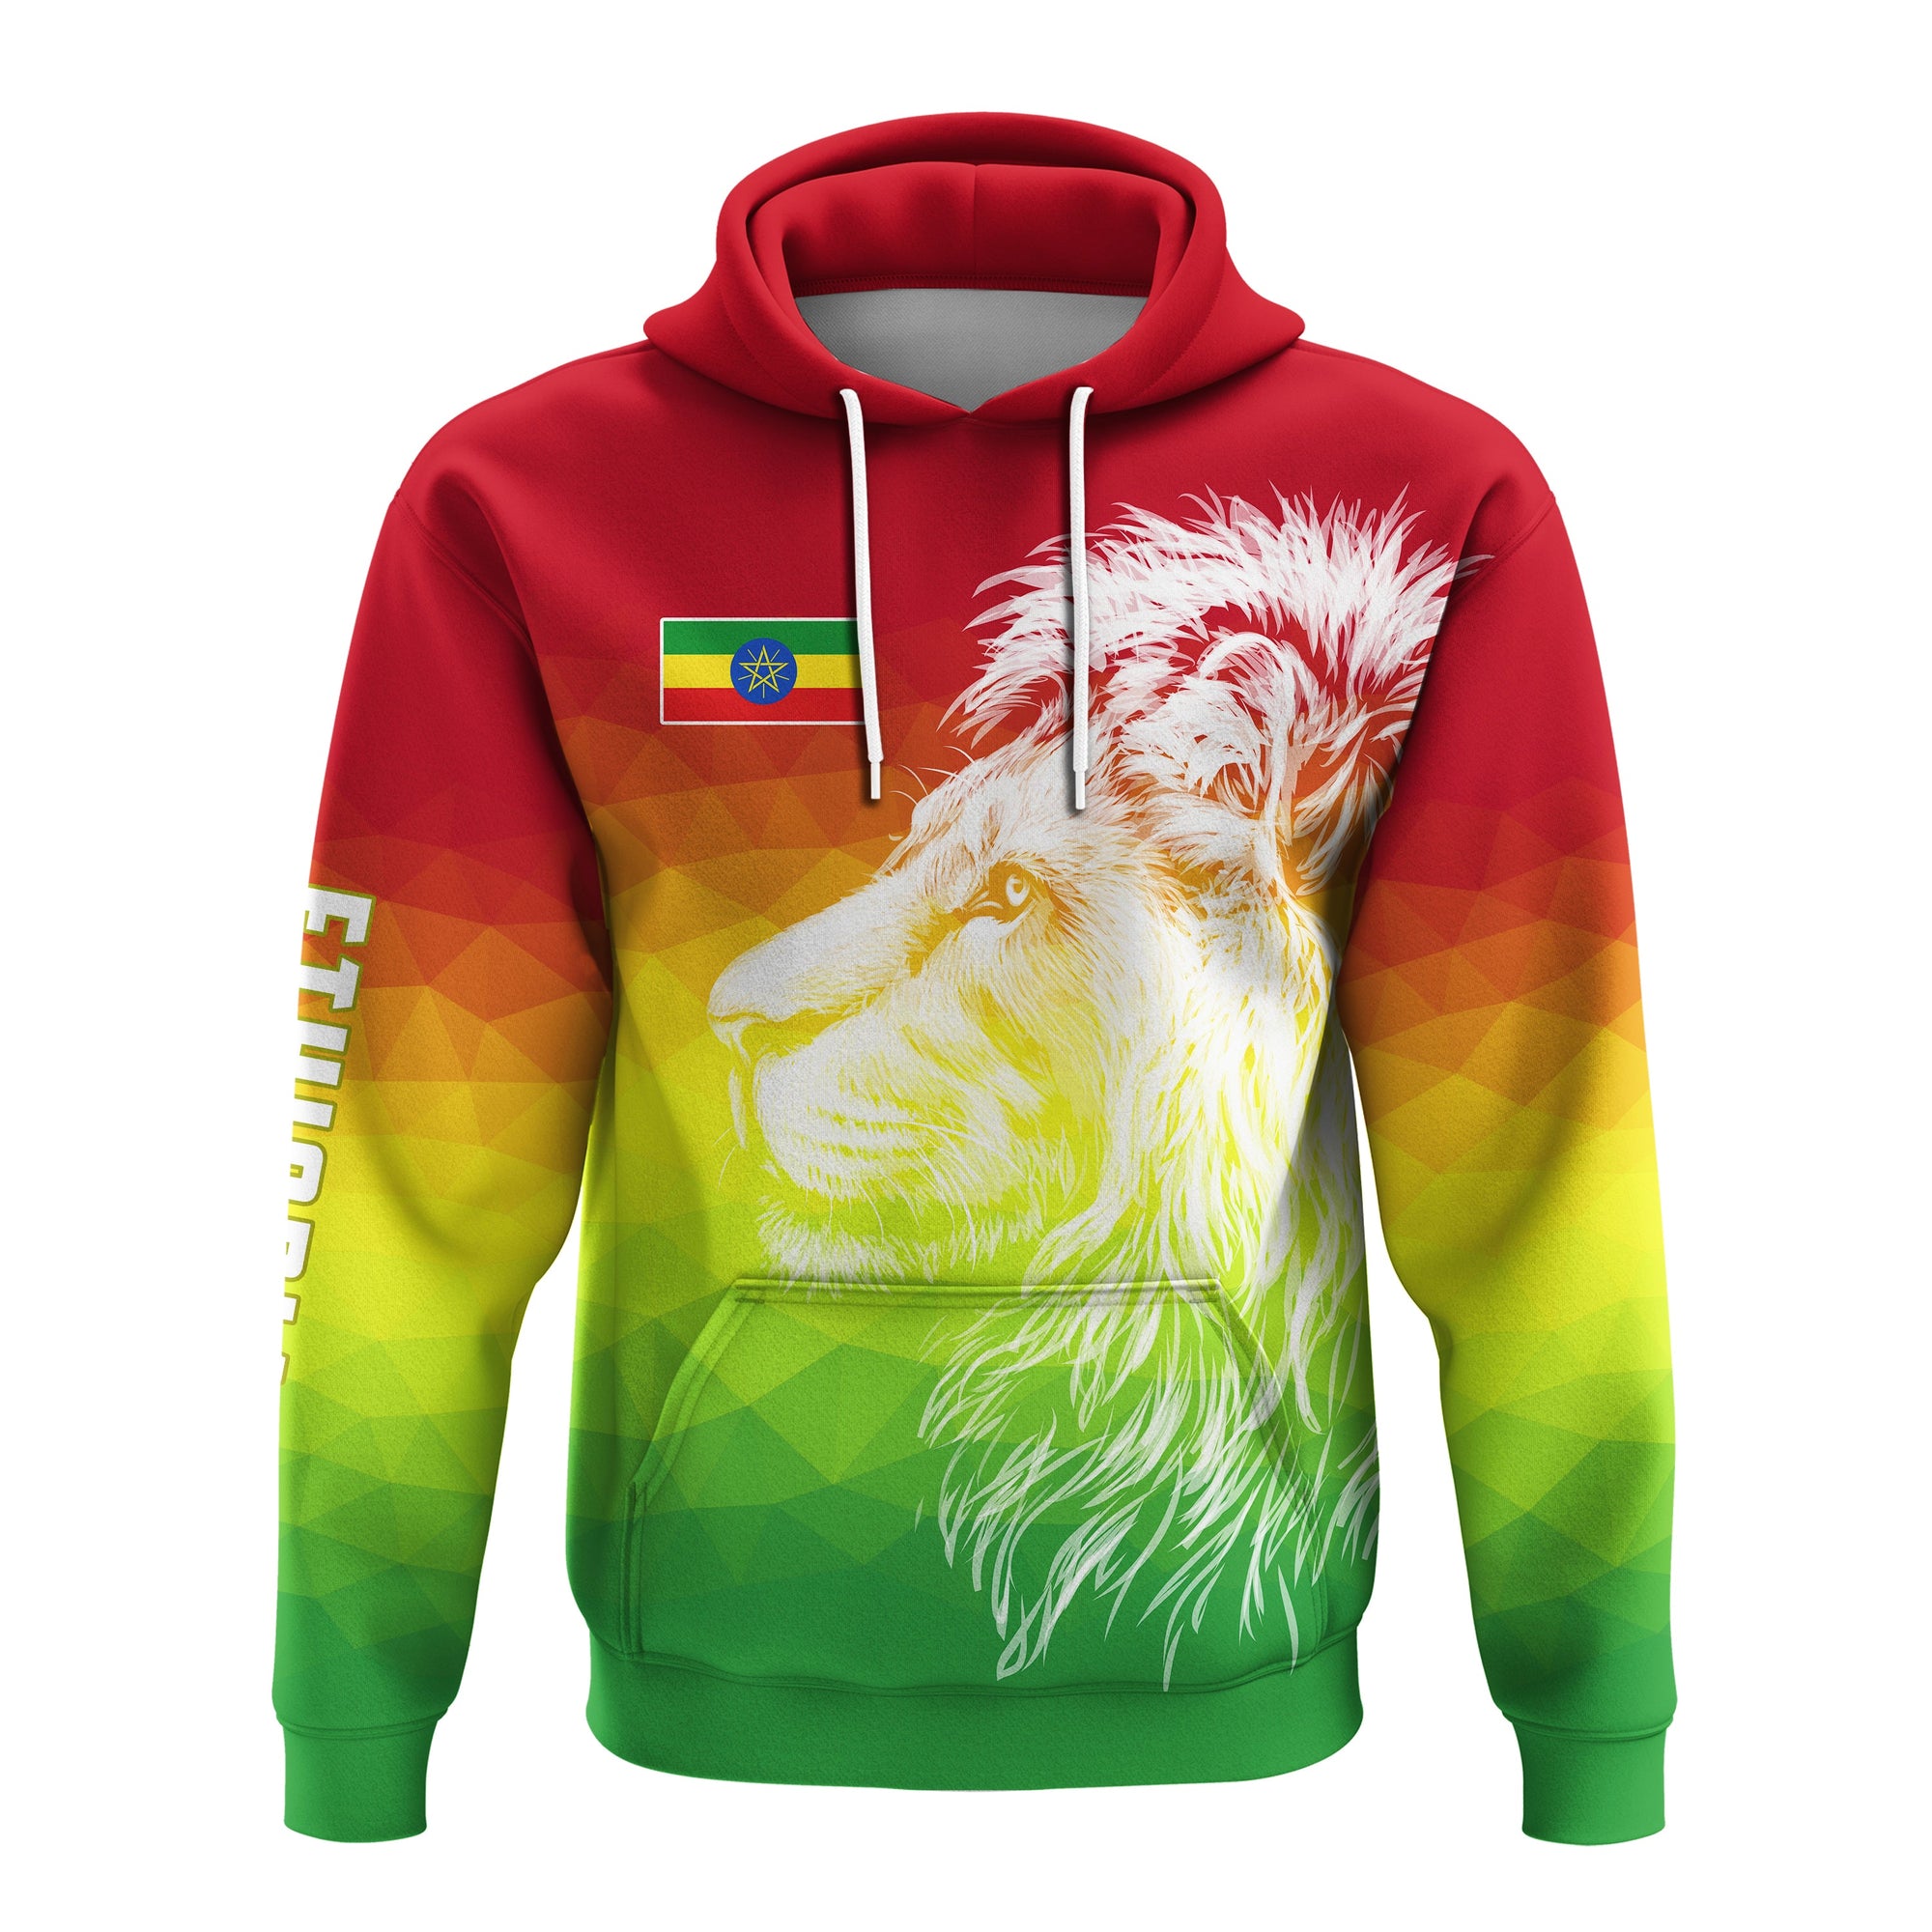 ethiopia-hoodie-lion-ethiopian-style-flag